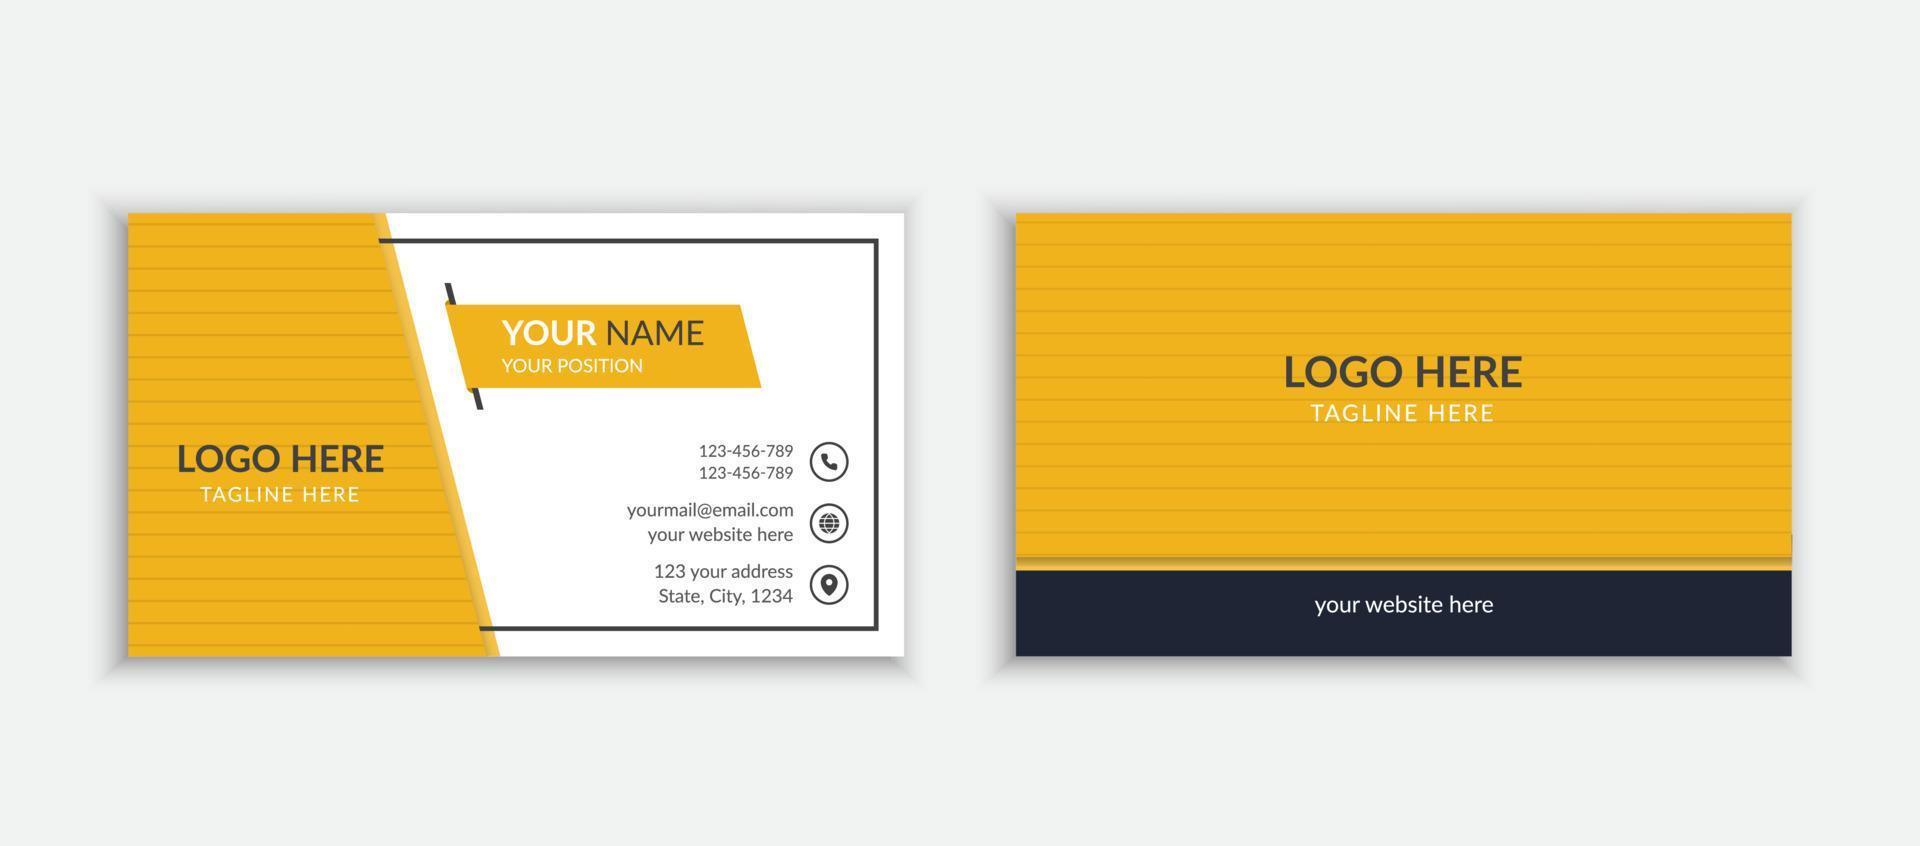 gelbe Farbe einfaches und sauberes horizontales Layout der Visitenkartenvorlage vektor